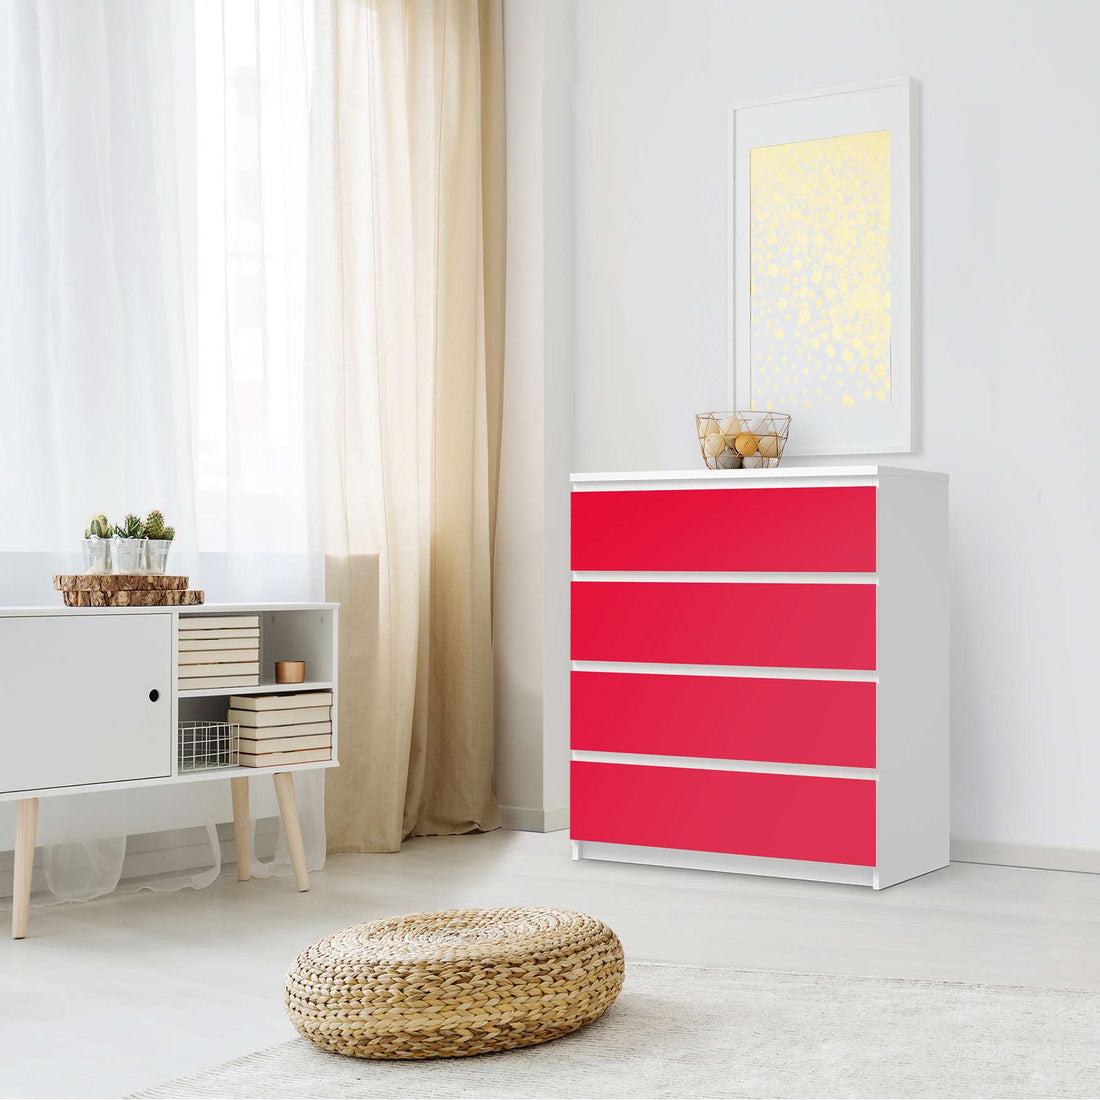 Folie für Möbel Rot Light - IKEA Malm Kommode 4 Schubladen - Schlafzimmer